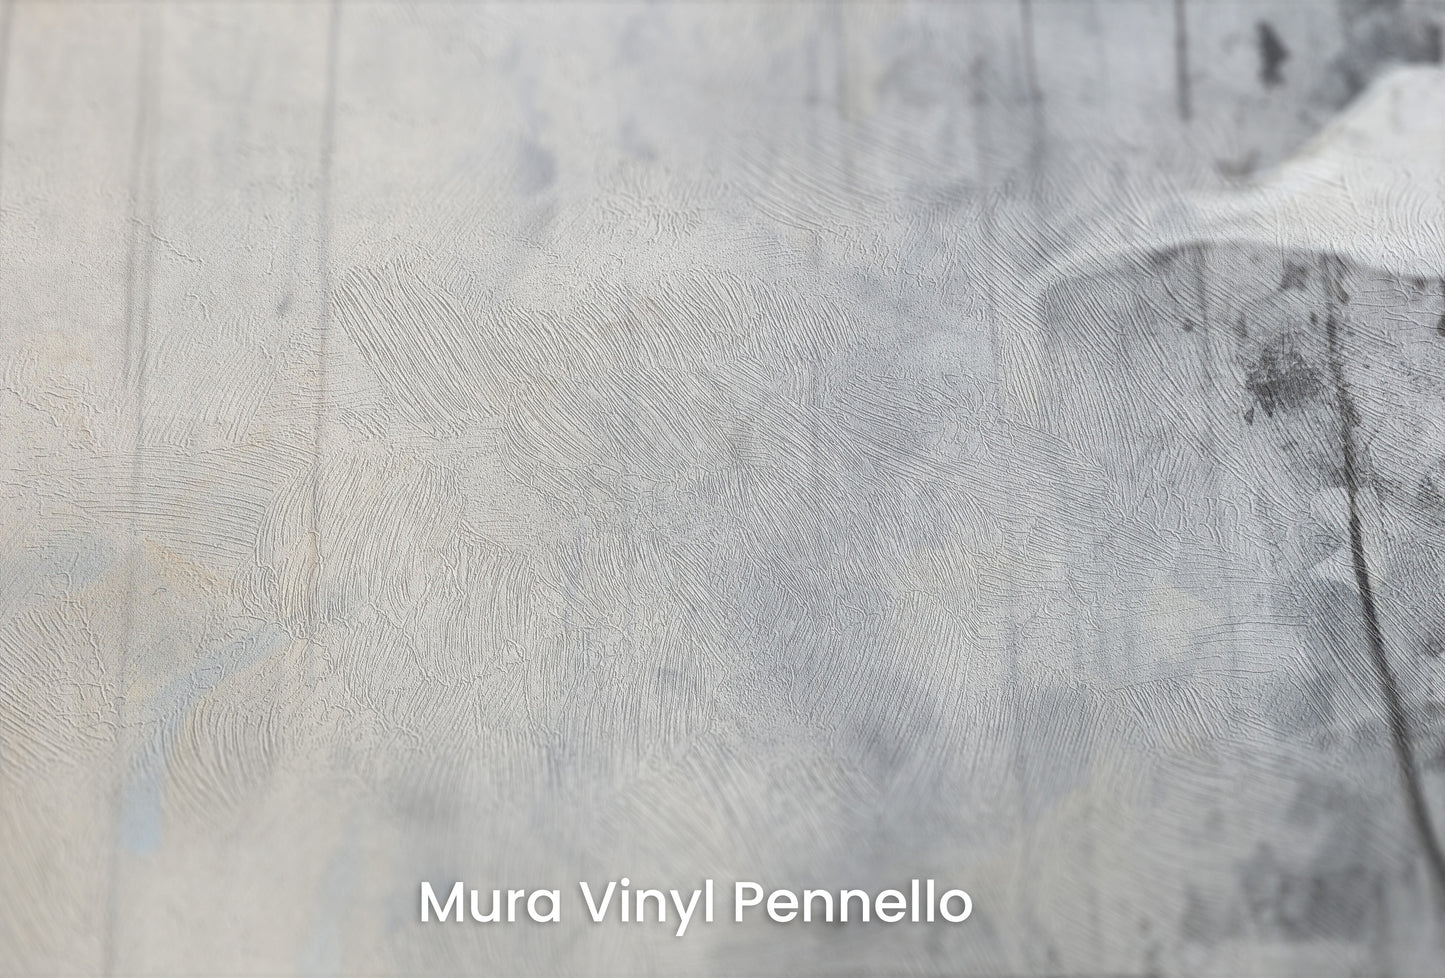 Zbliżenie na artystyczną fototapetę o nazwie SOFTLY SPEAKING SILHOUETTES na podłożu Mura Vinyl Pennello - faktura pociągnięć pędzla malarskiego.